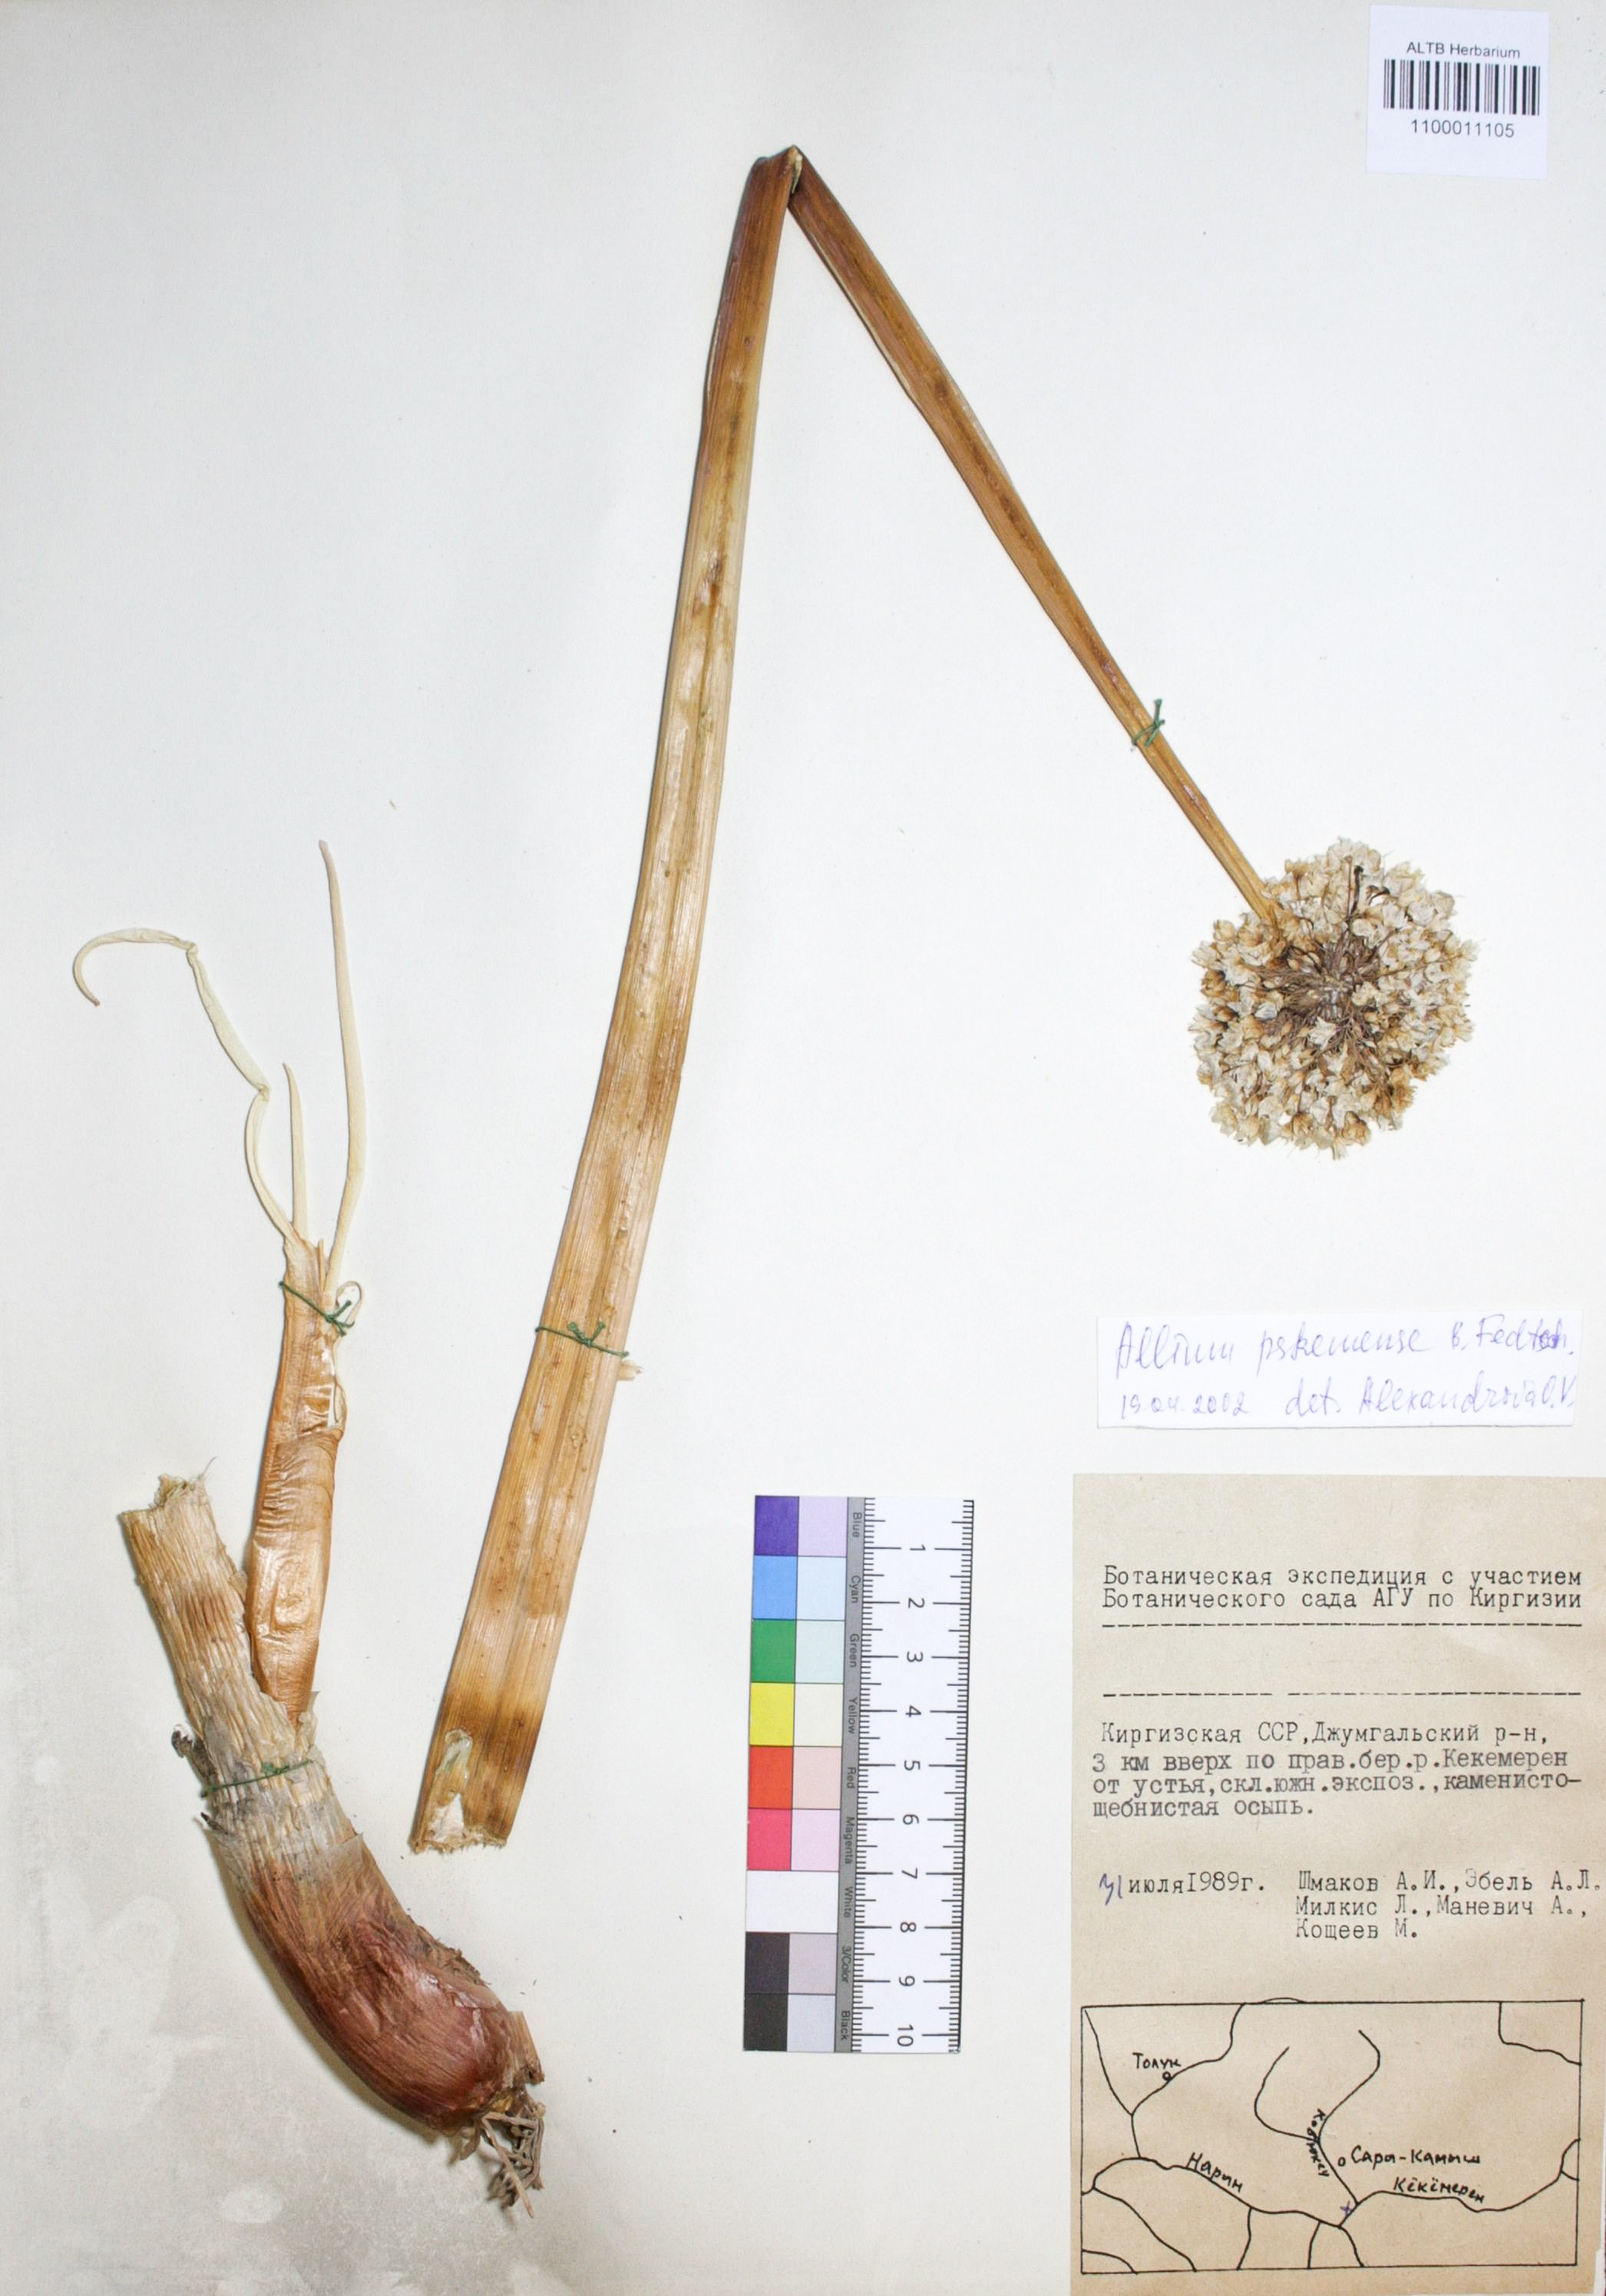 Allium pskemense B. Fedtsch.